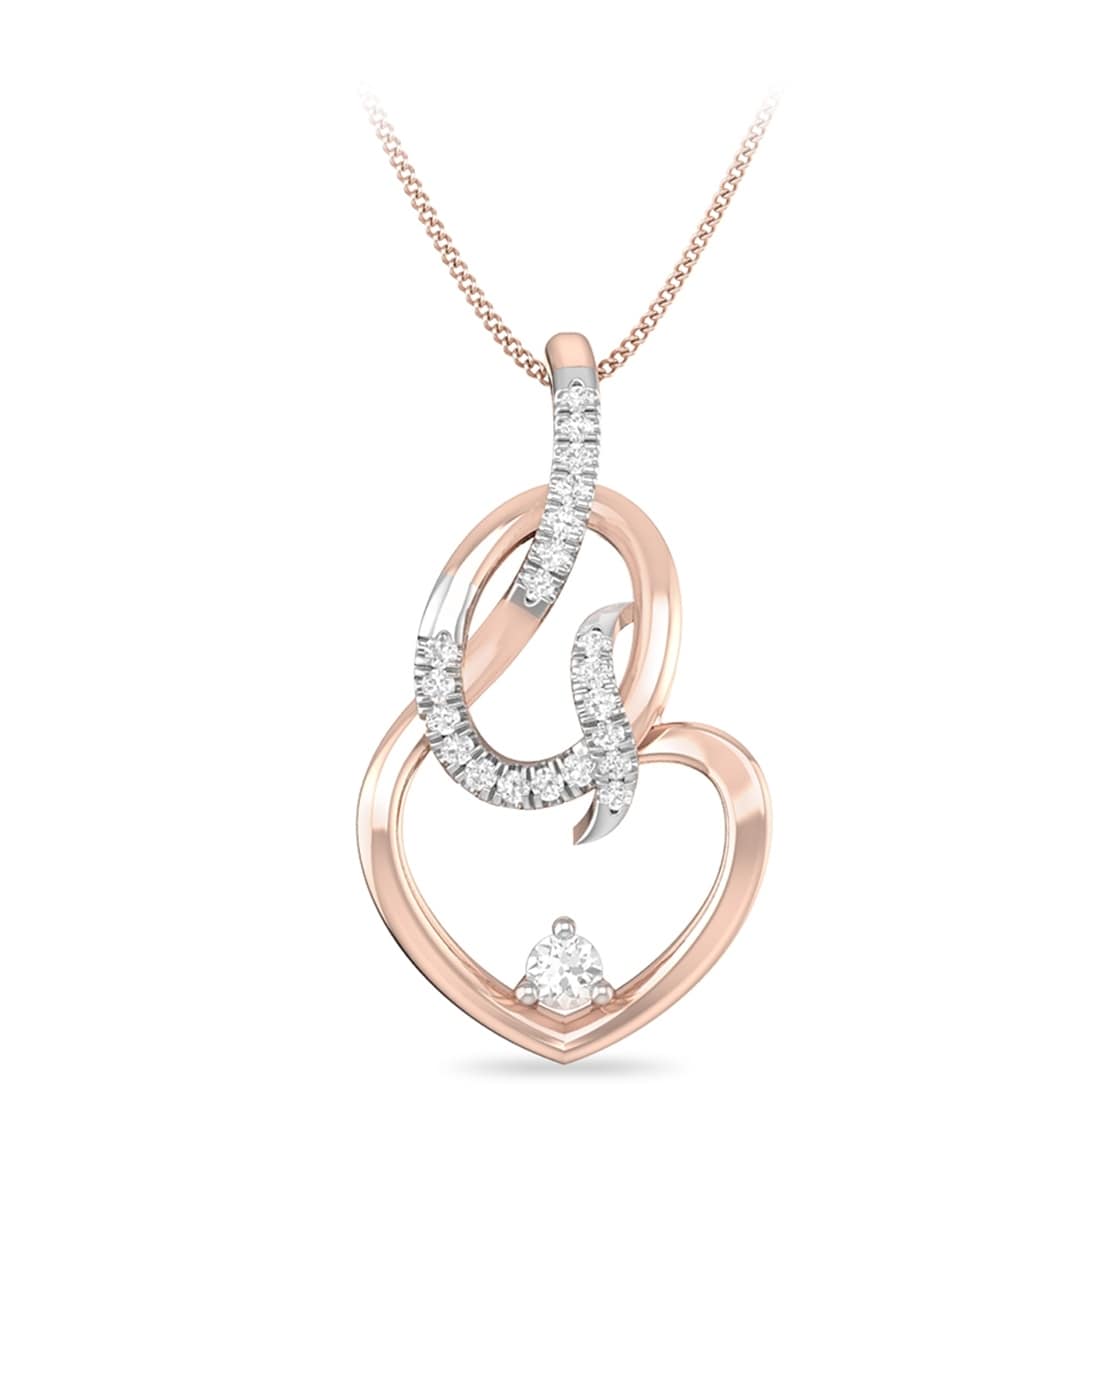 Estate 14K White Gold Heart-Shaped Diamond Necklace – Springer's